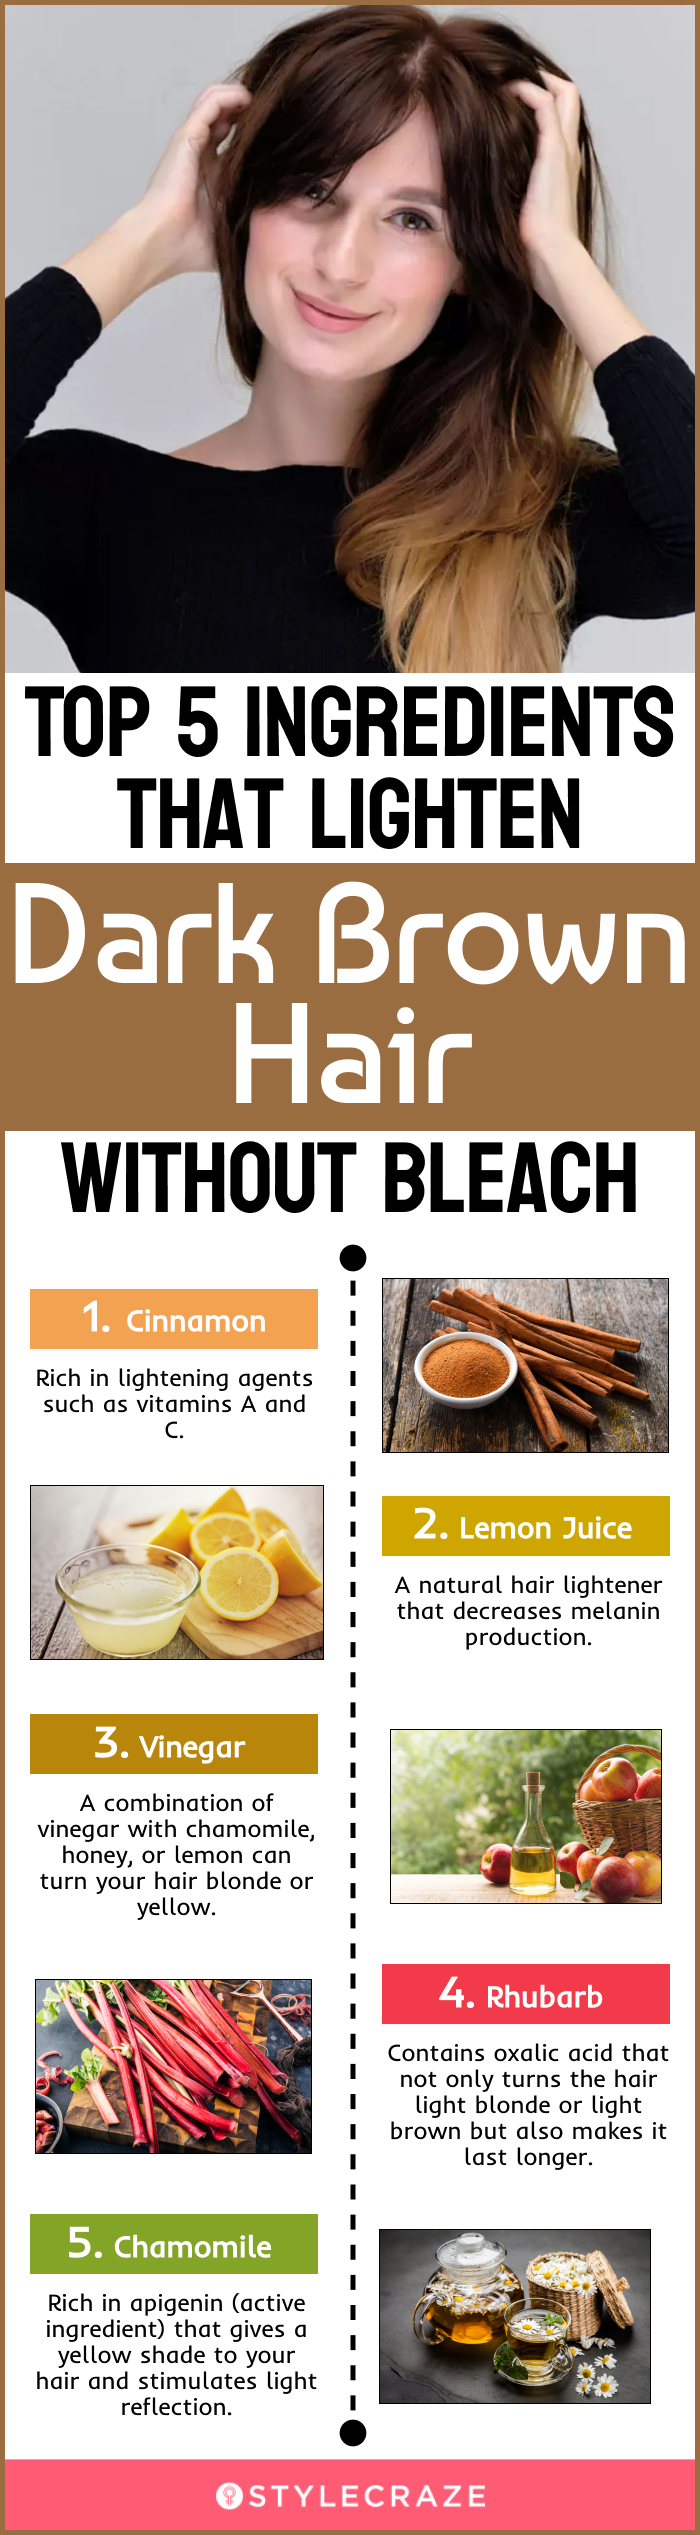 top 5 ingredients that lighten dark brown hair without bleach (infographic)